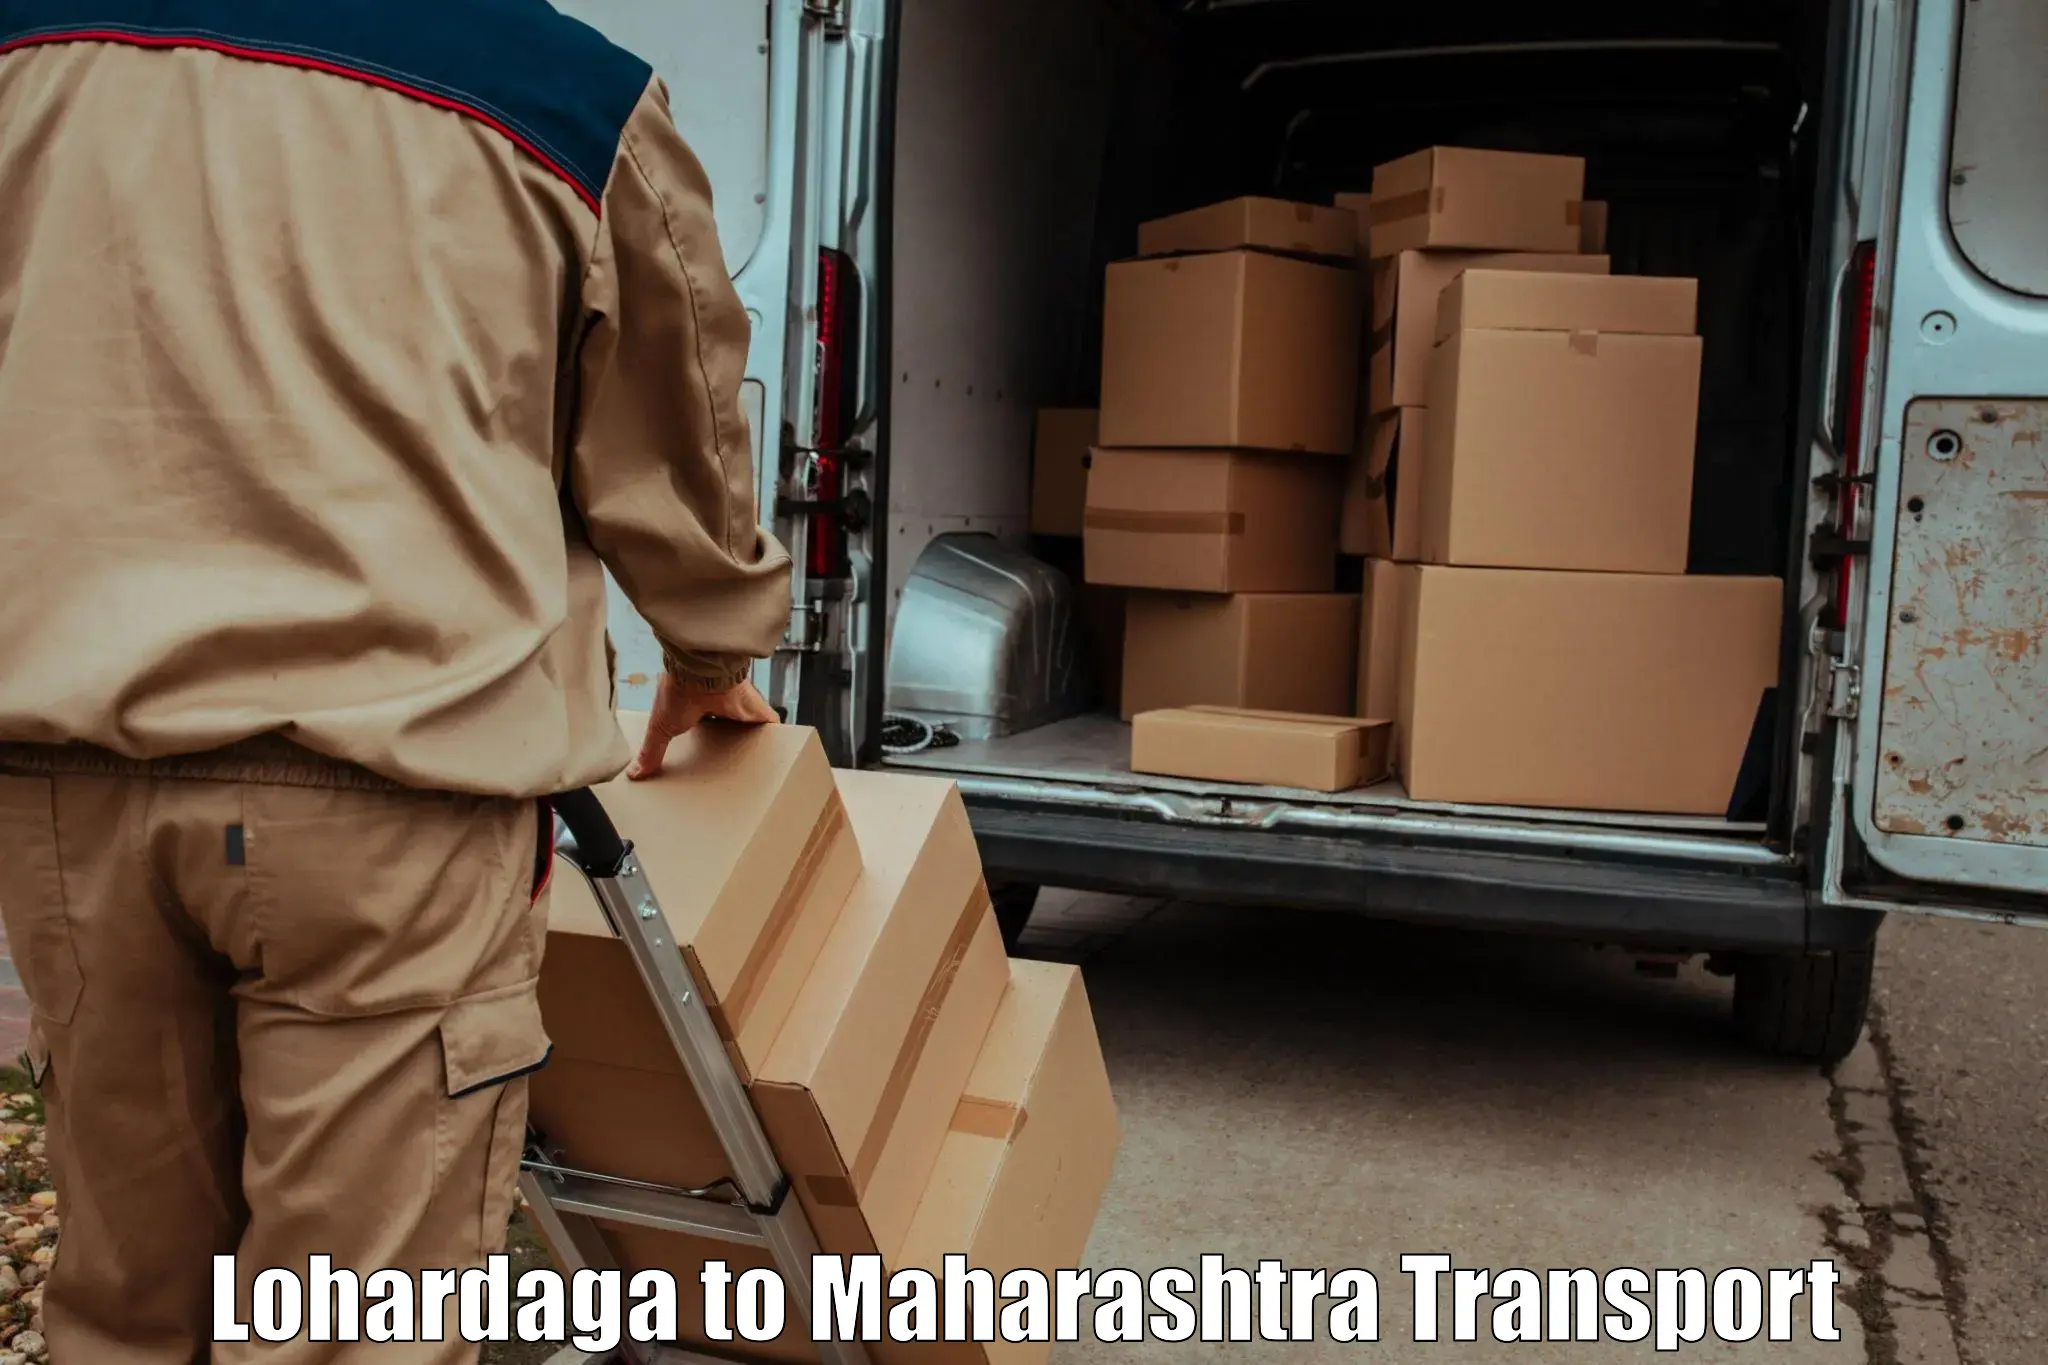 Luggage transport services Lohardaga to Kalbadevi